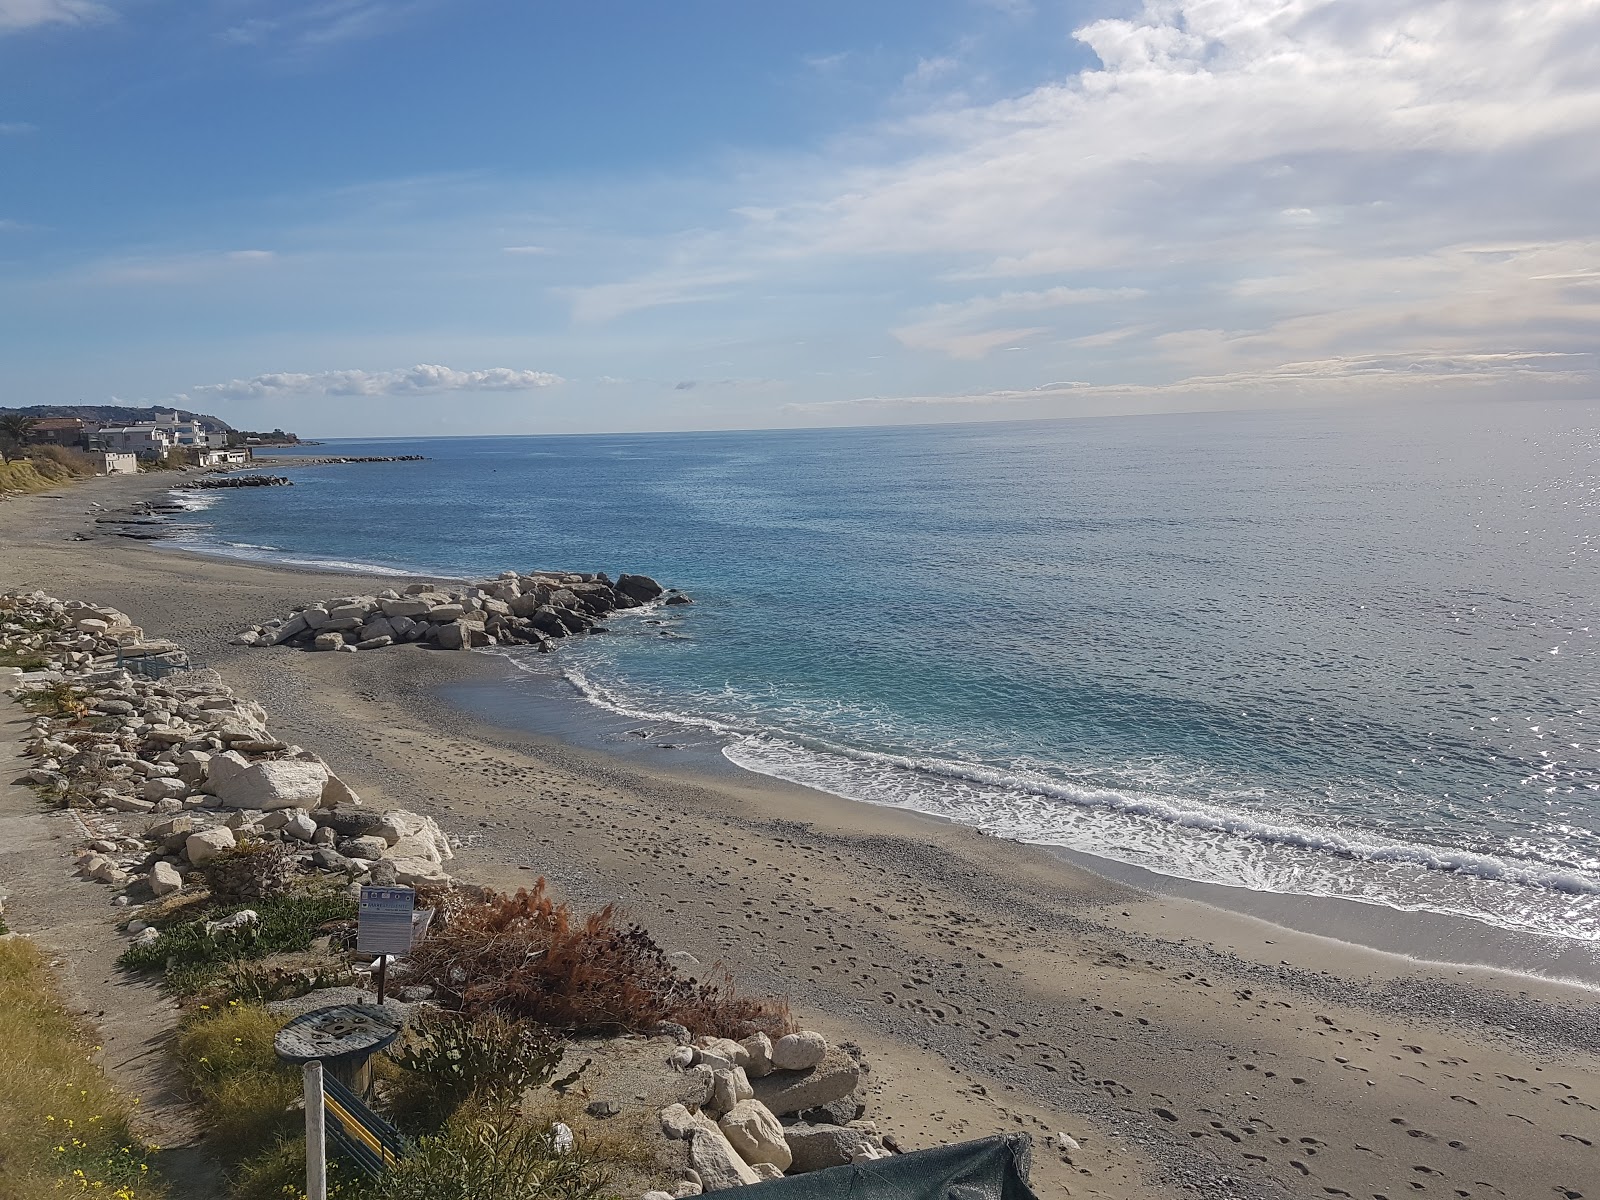 Foto af Spiaggia Calypso - populært sted blandt afslapningskendere